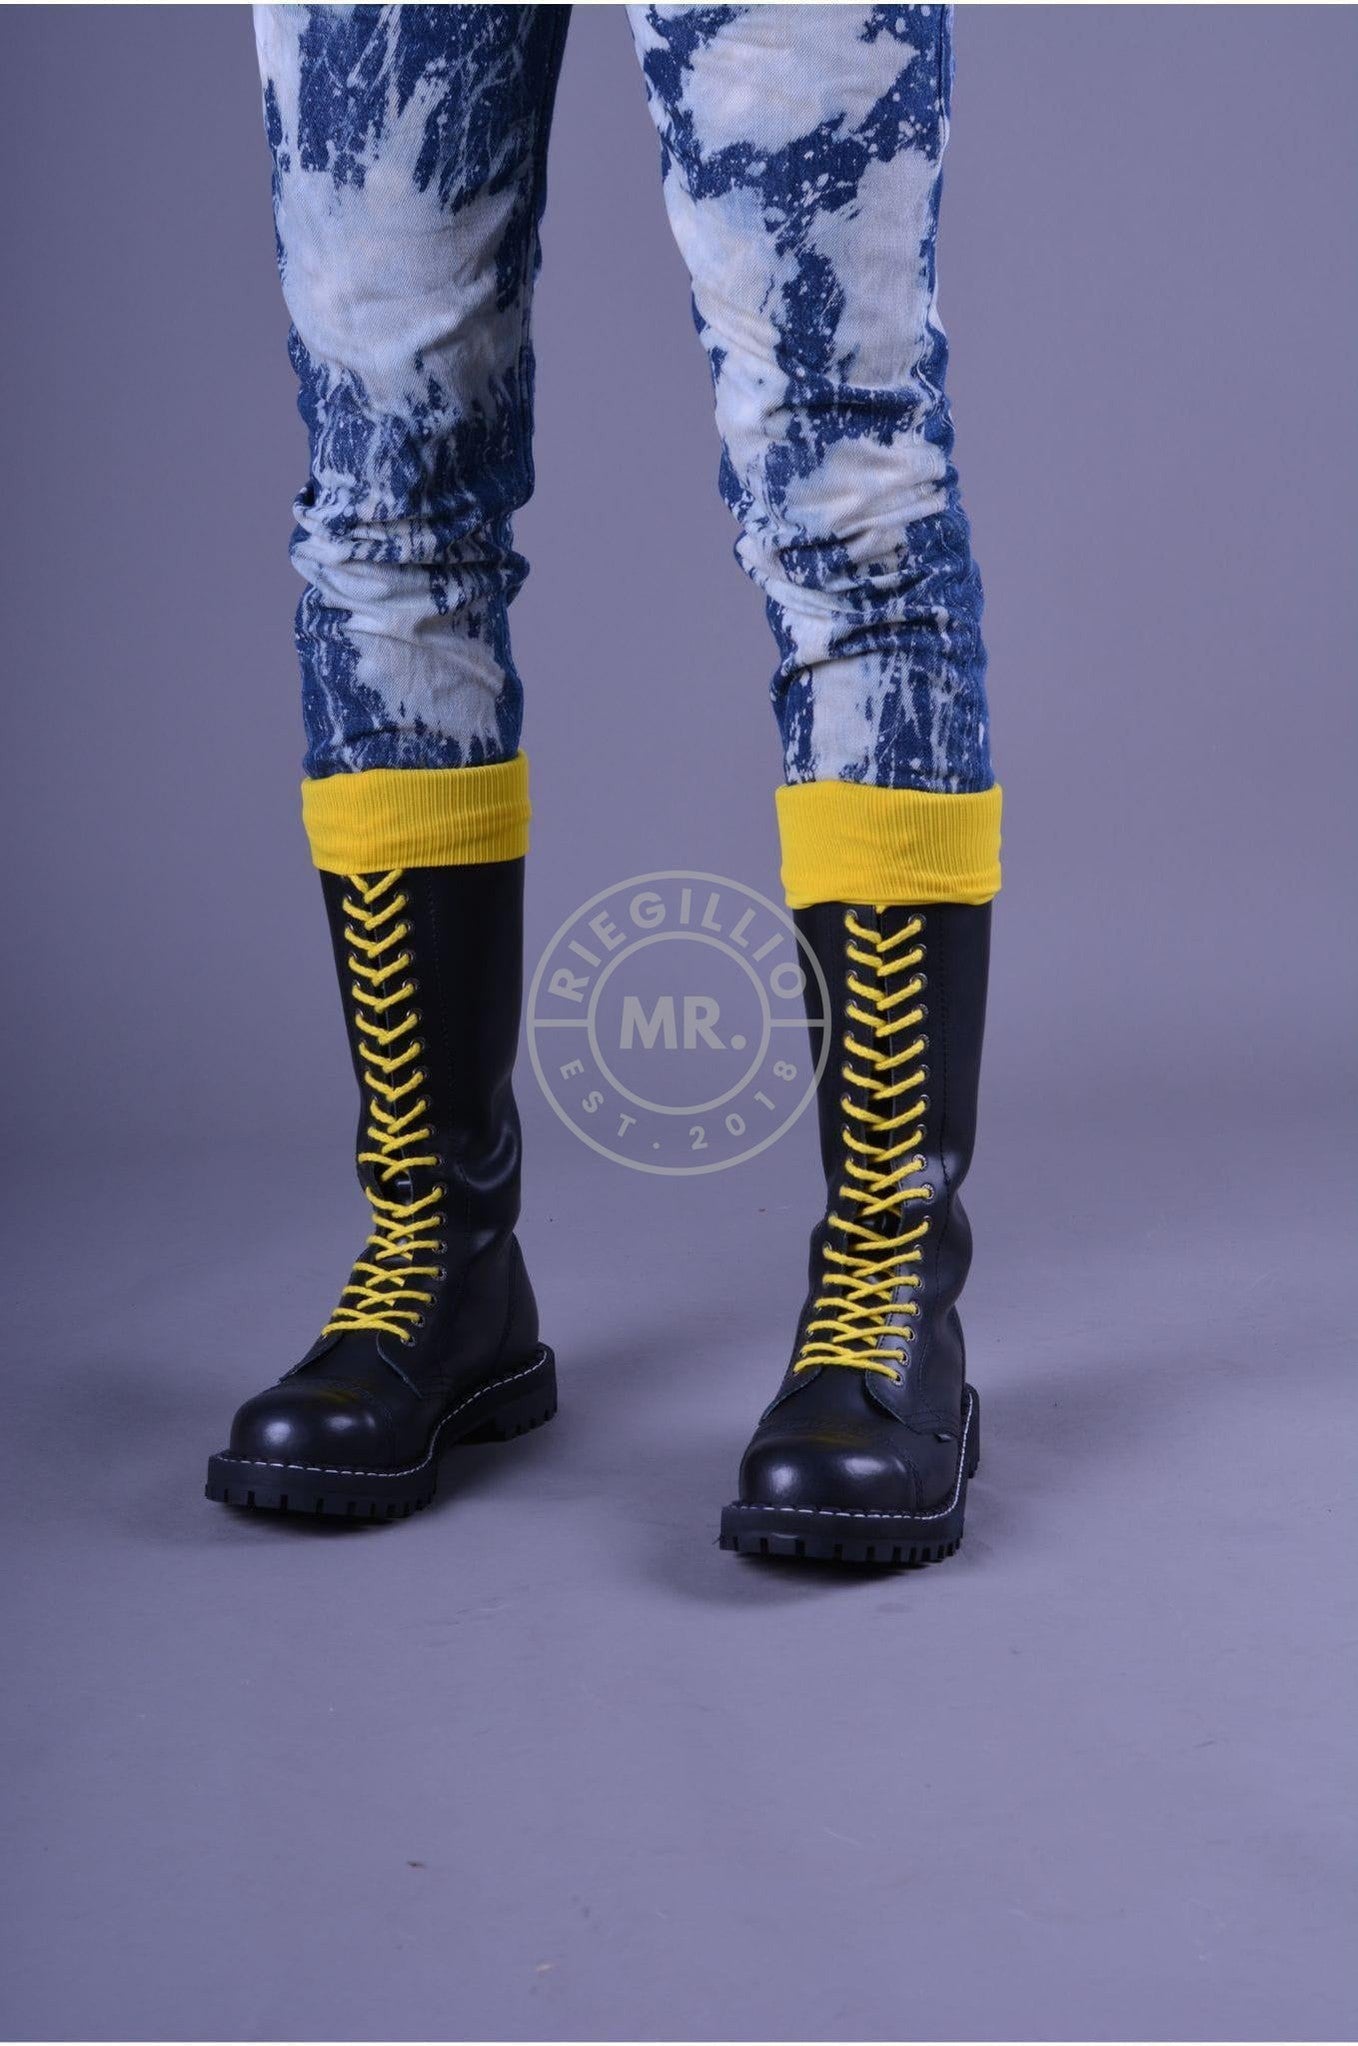 Boots Laces-at MR. Riegillio